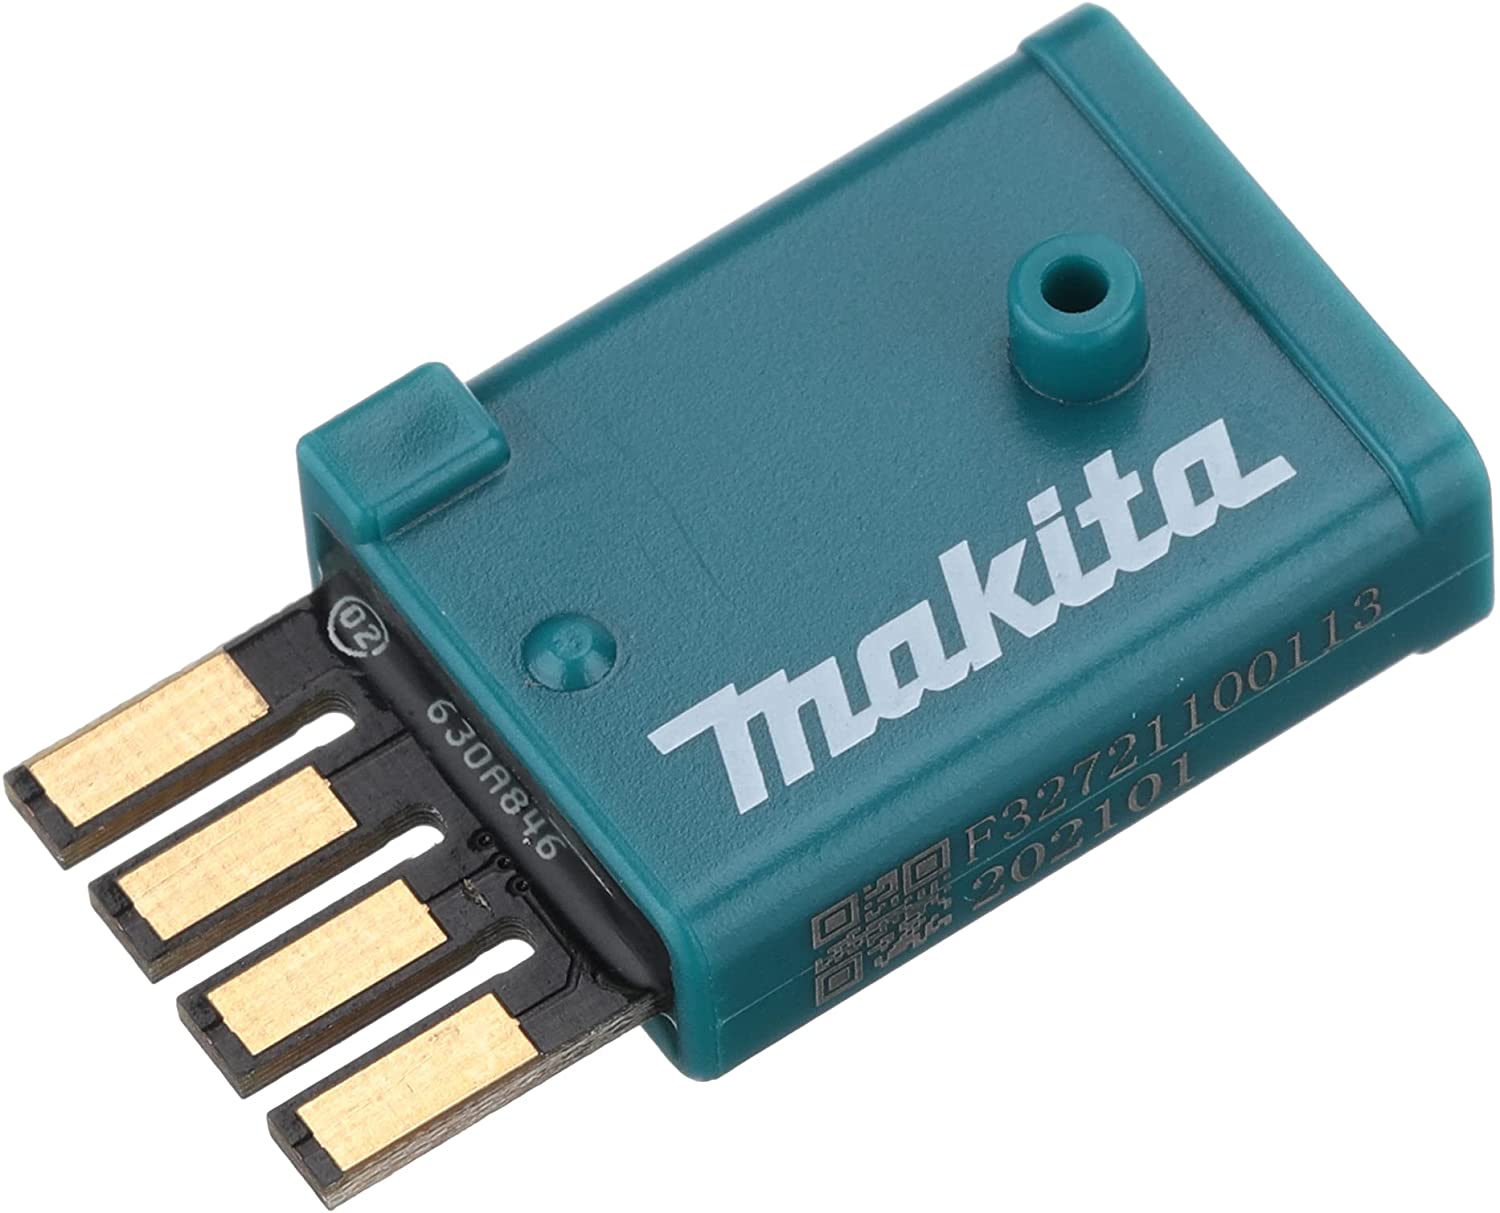 マキタ セール開催中最短即日発送 A-66151 激安特価品 ワイヤレスユニット WUT01